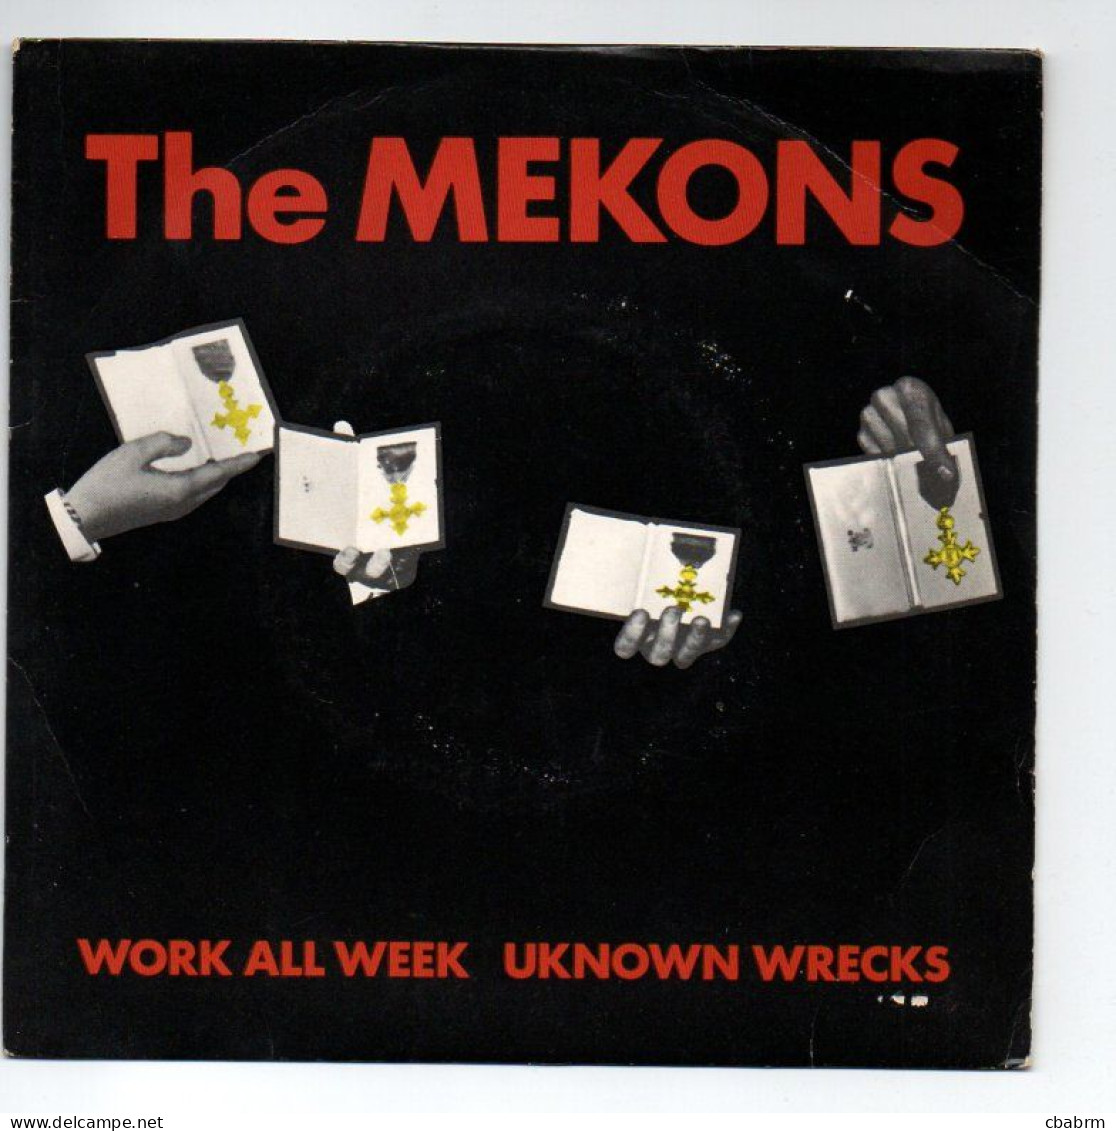 SP 45 TOURS THE MEKONS WORK ALL WEEK 1979 UK VIRGIN VS 300 - 7" - Rock